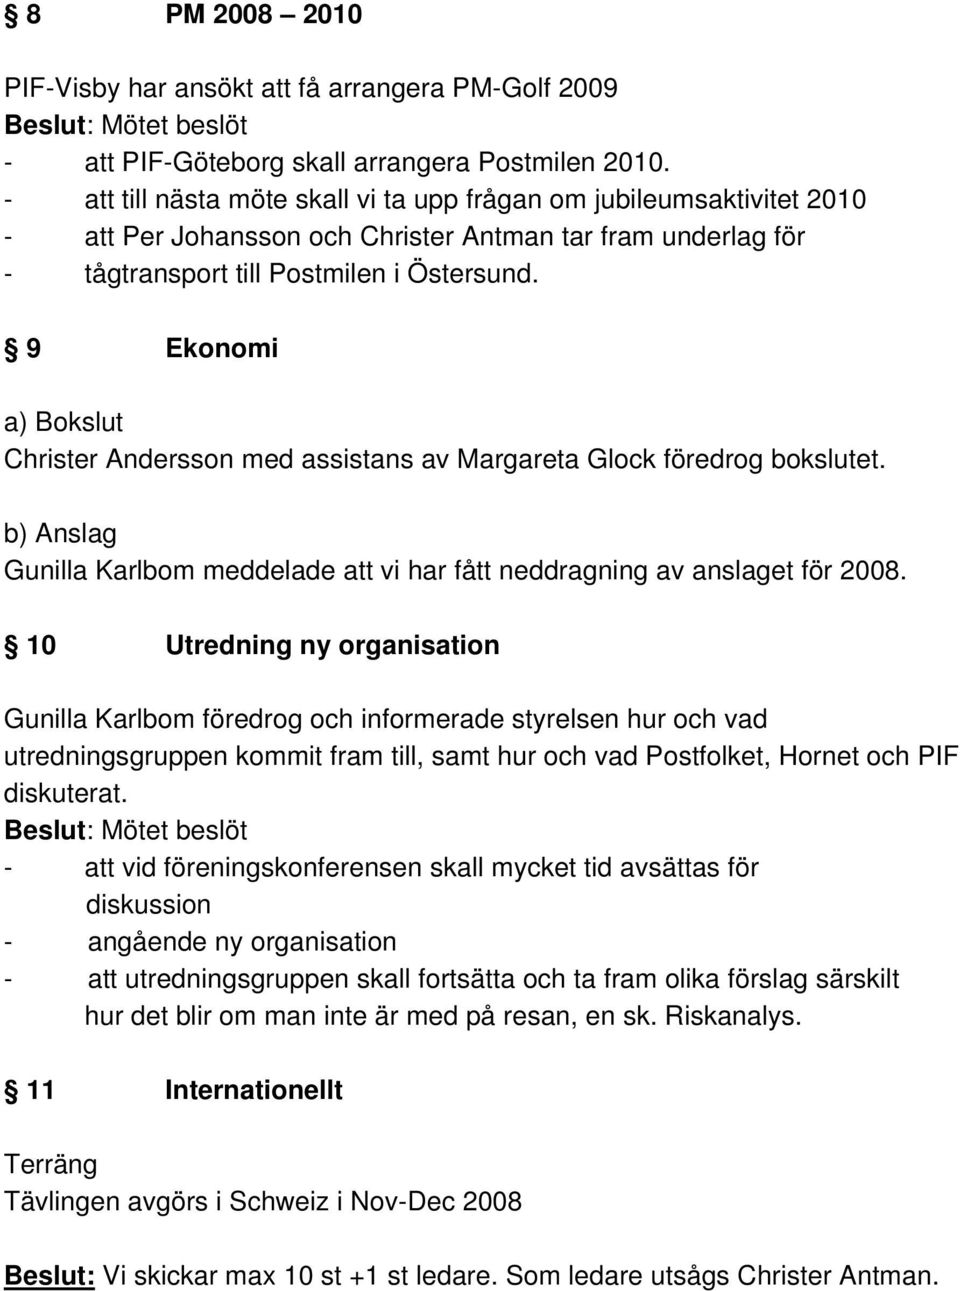 9 Ekonomi a) Bokslut Christer Andersson med assistans av Margareta Glock föredrog bokslutet. b) Anslag Gunilla Karlbom meddelade att vi har fått neddragning av anslaget för 2008.